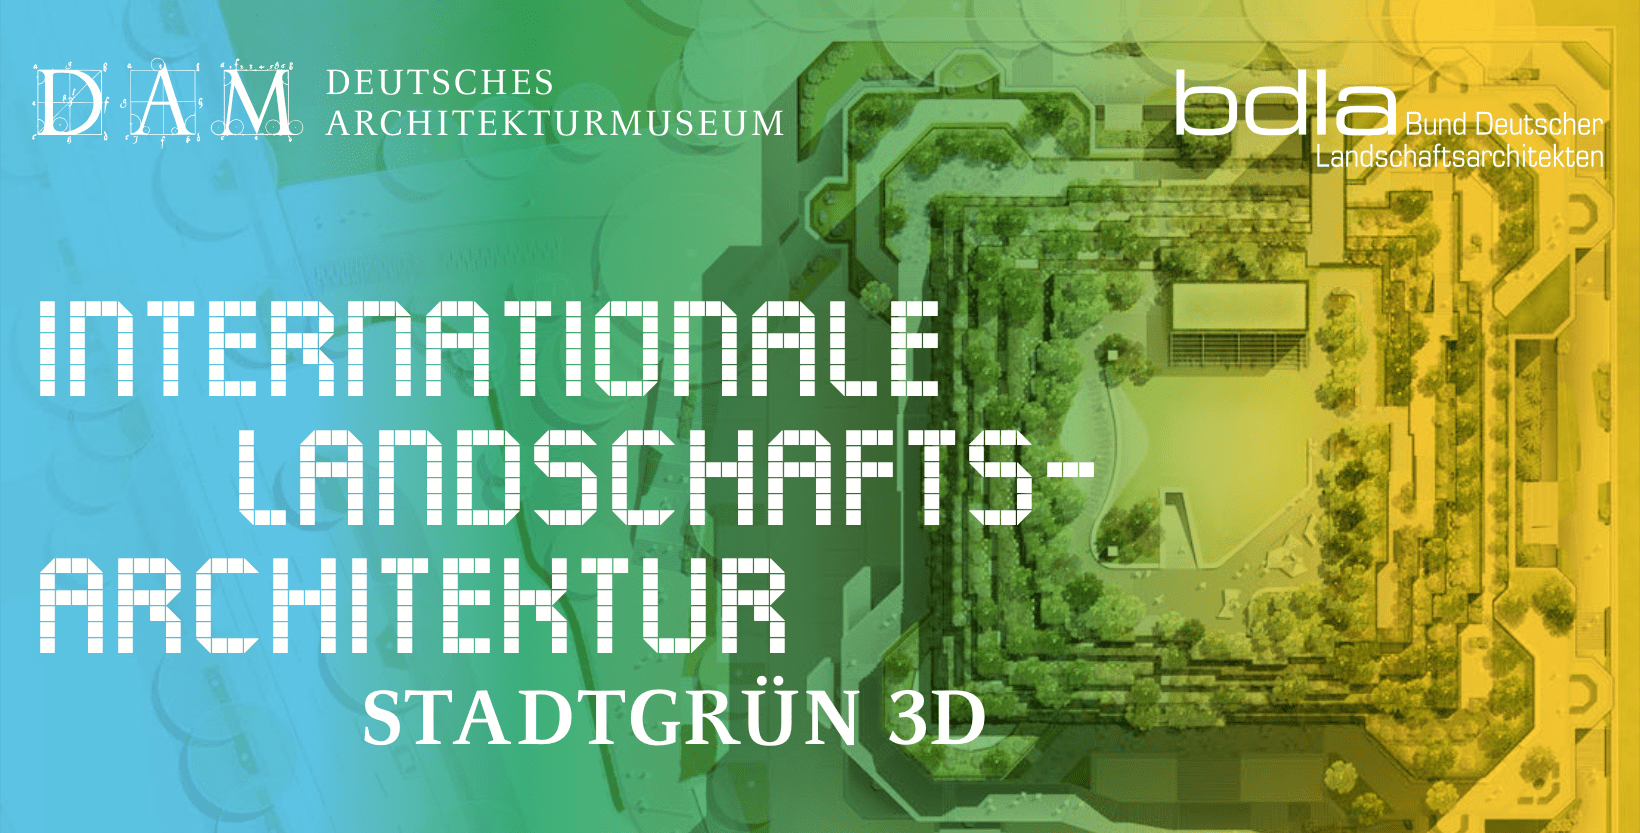 Die Einladung zur Vortragsreihe Stadtgrün 3D im DAM